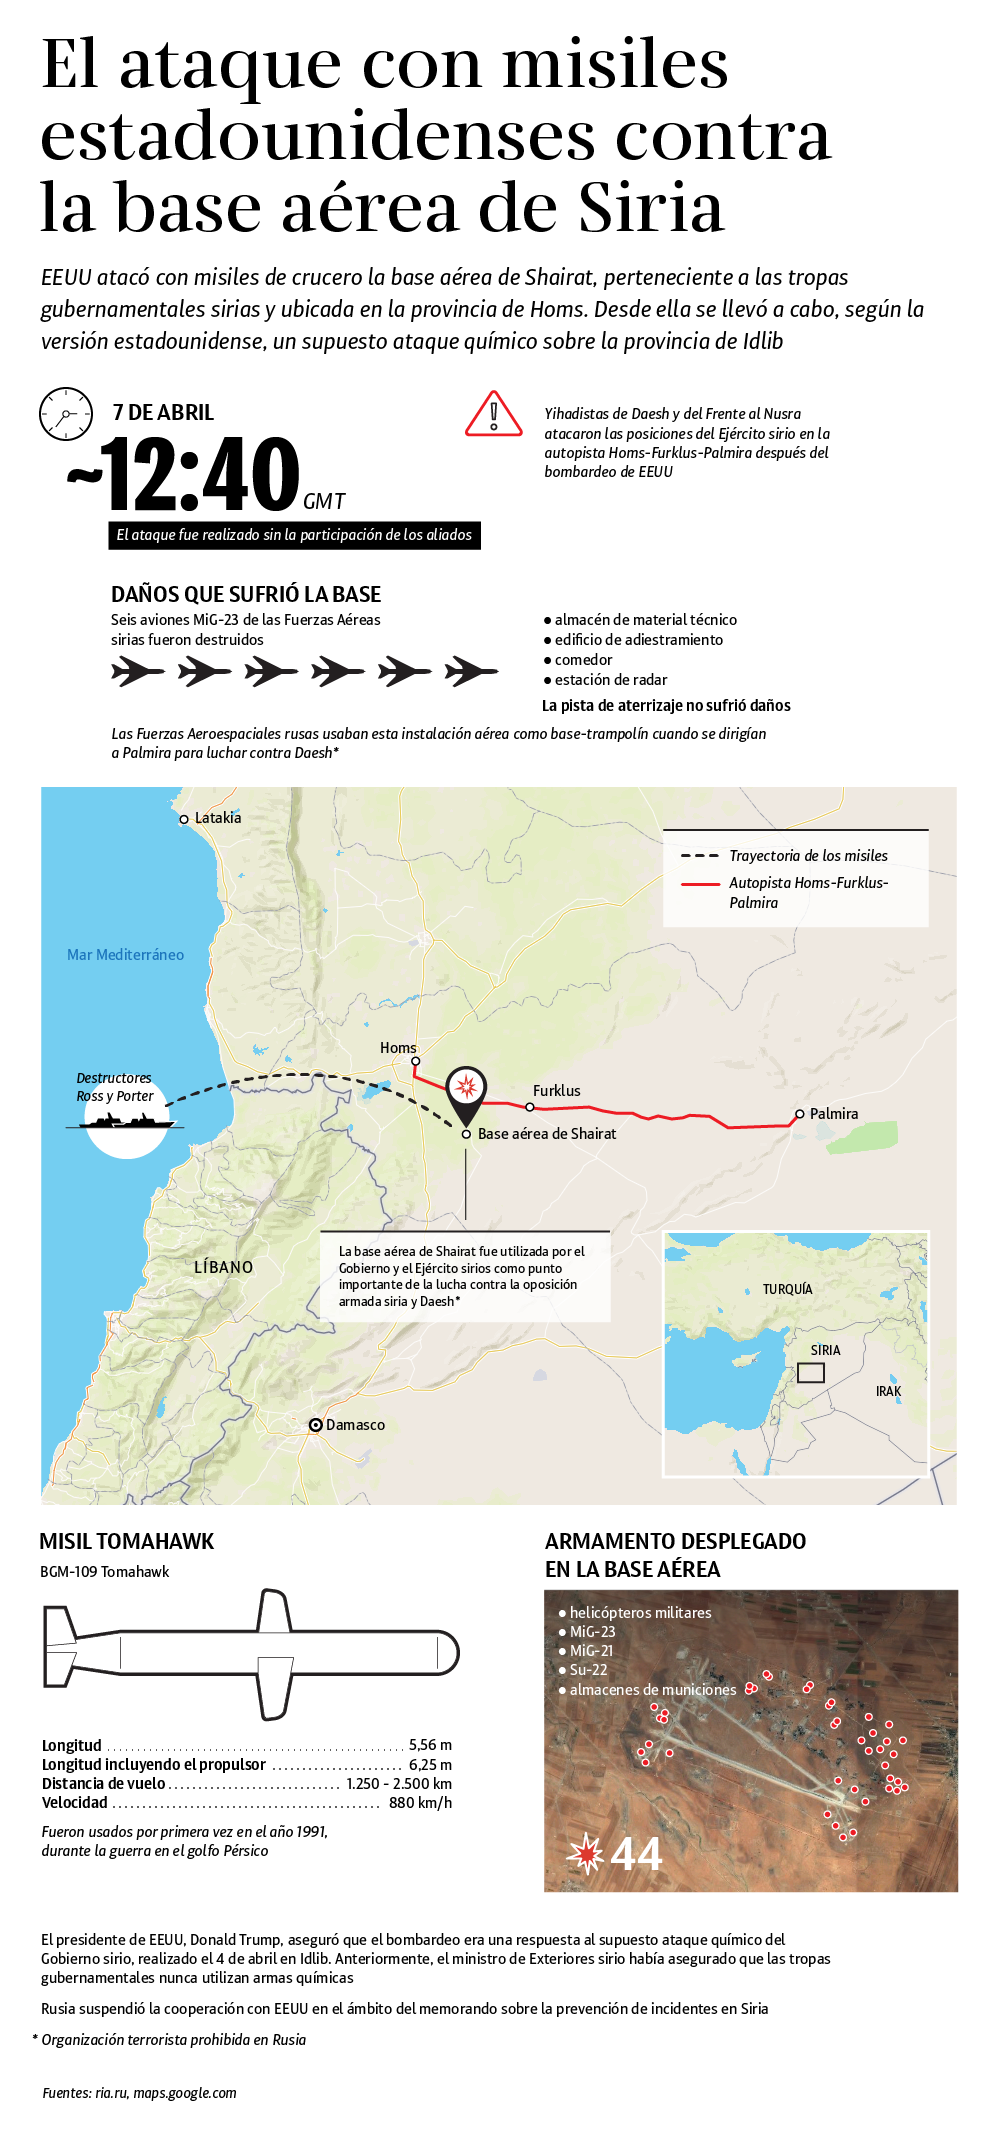 Los detalles del ataque con misiles Tomahawk de EEUU contra la base aérea siria - Sputnik Mundo